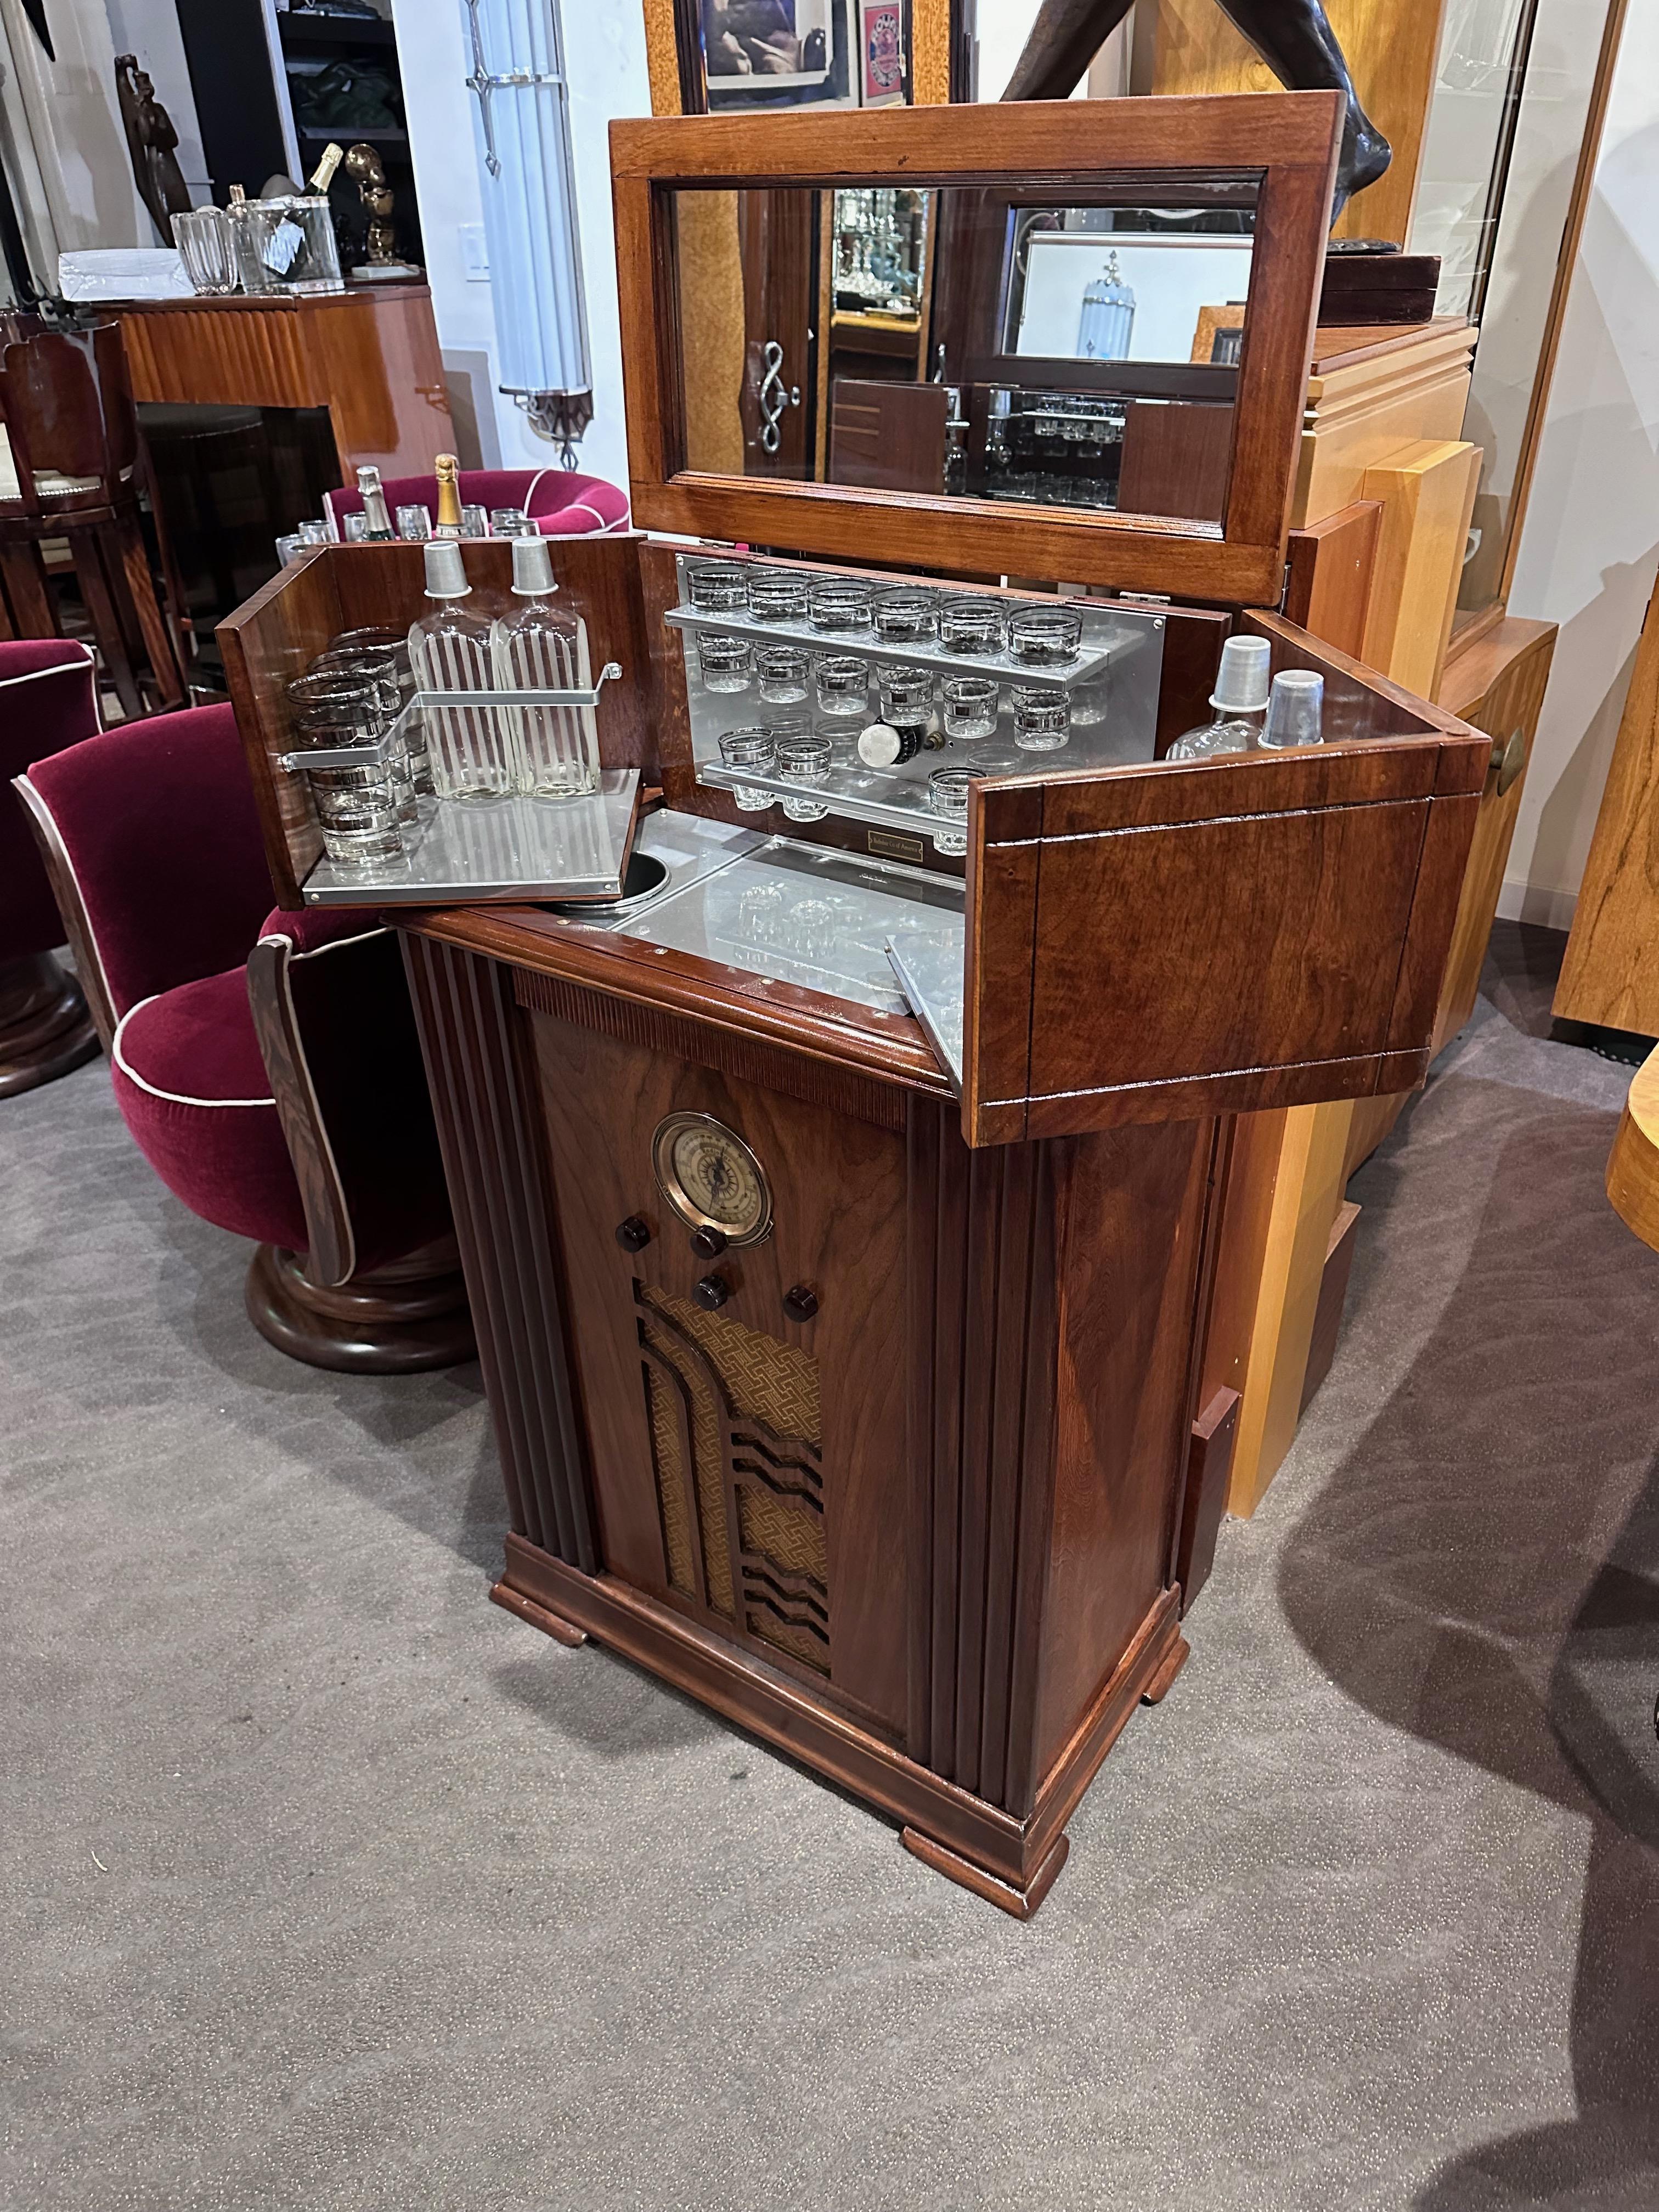 RCA Radiobar 1935 Bluetooth Seltenes frühes Modell restauriert. Dieses einzigartige frühe Modell unterscheidet sich von den typischen Philco-Radiobars, auf deren Verkauf wir uns im Laufe der Jahre ebenfalls spezialisiert haben. Dieses Modell